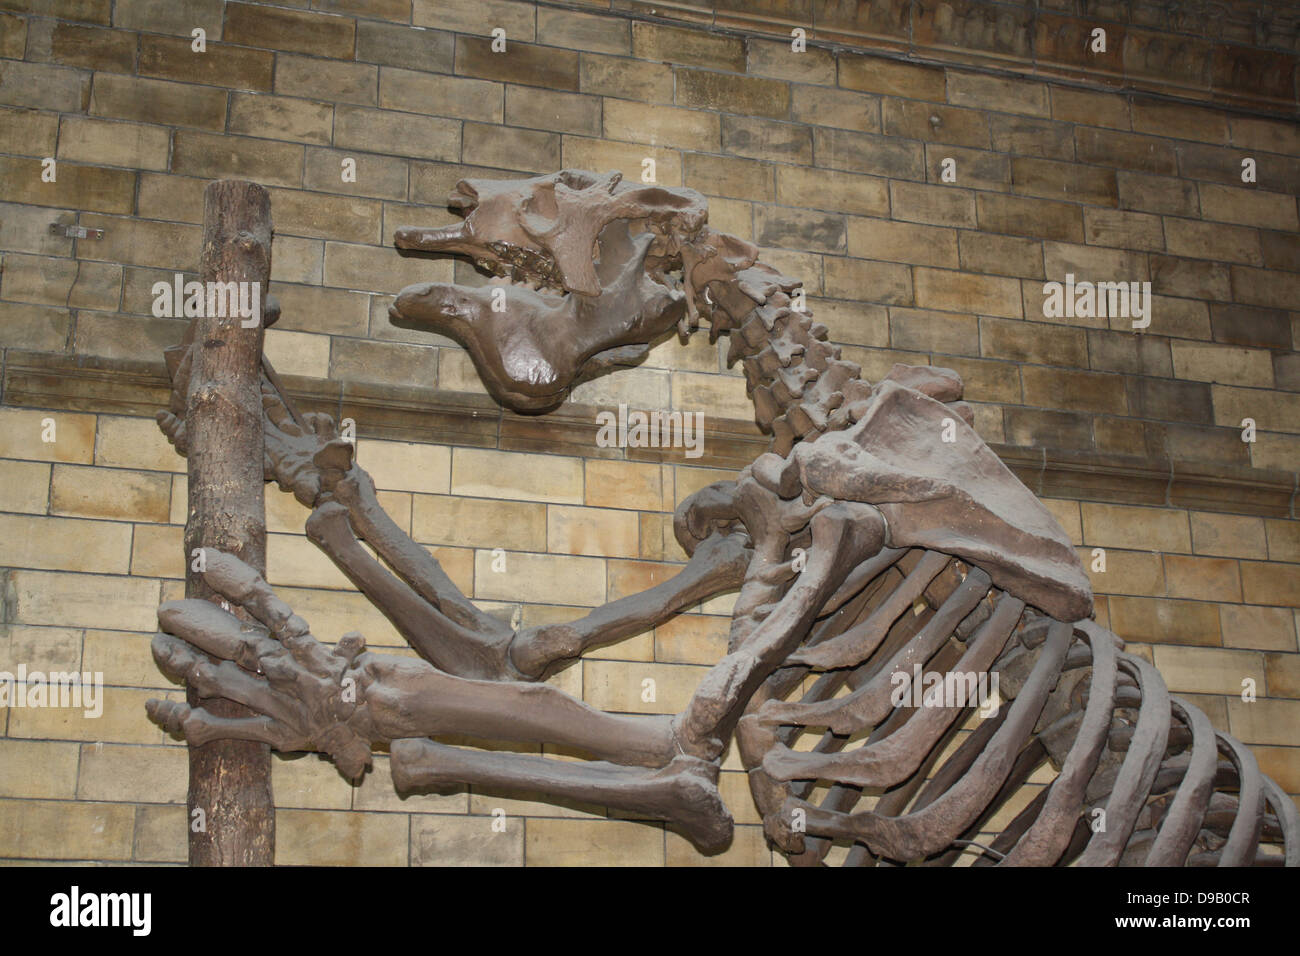 Mamífero extinguido - Megatherium americanum. Ground Sloth gigantes vivieron en el fresco, seco matorral y praderas de América del Sur hasta hace unos 10.000 años. El esqueleto se confunde a menudo con la de un dinosaurio, pero el gigante Ground Sloth fue realmente un mamífero extinguido, un pariente del árbol vivo de pereza. Nombre científico Megatherium, que significa "gran animal". Foto de stock